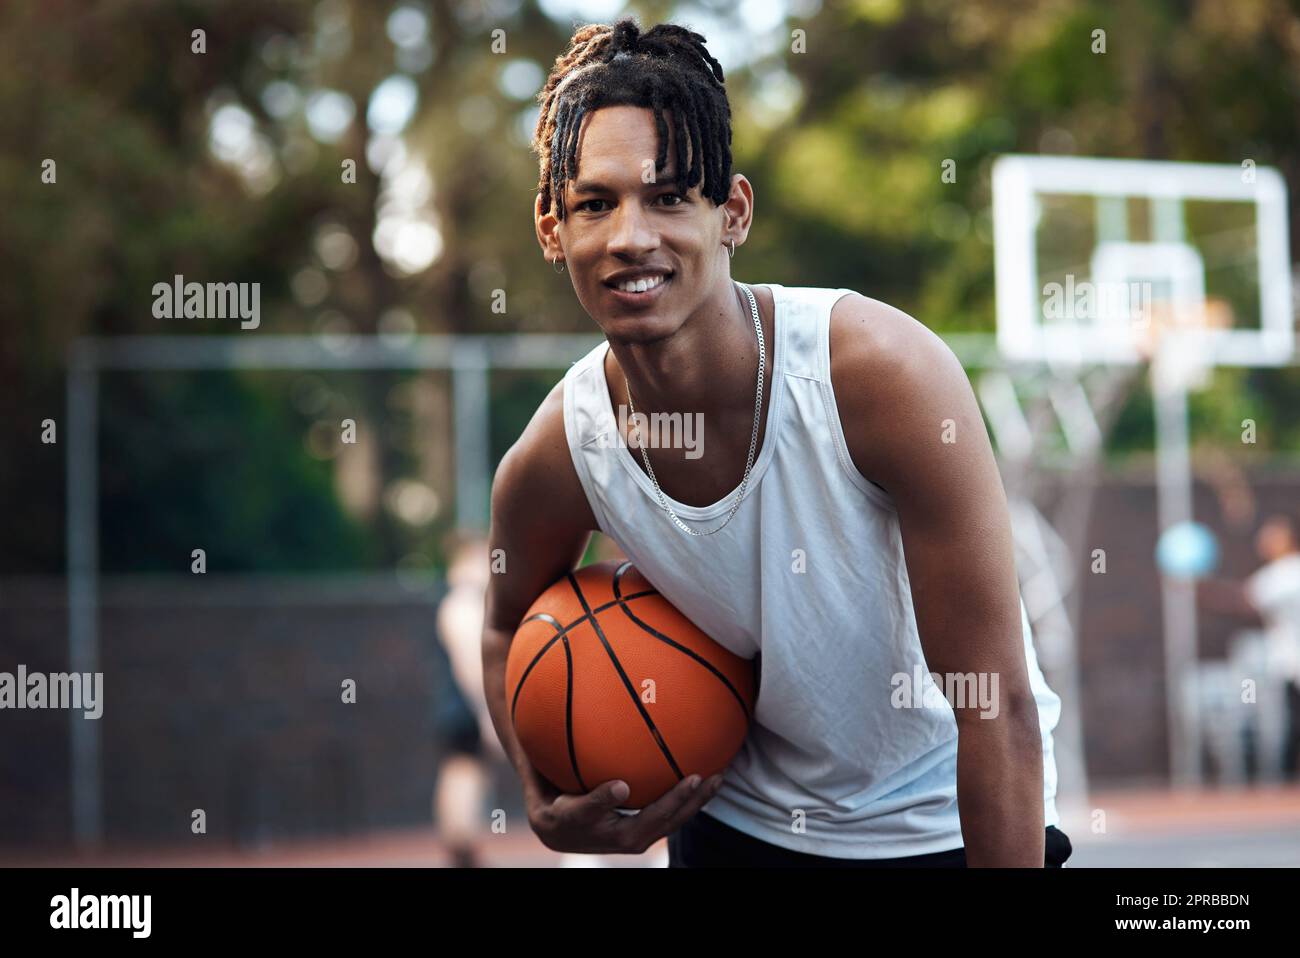 Schwer zu spielen, aber leicht zu spielen. Porträt eines sportlichen jungen Mannes, der auf einem Basketballplatz steht. Stockfoto